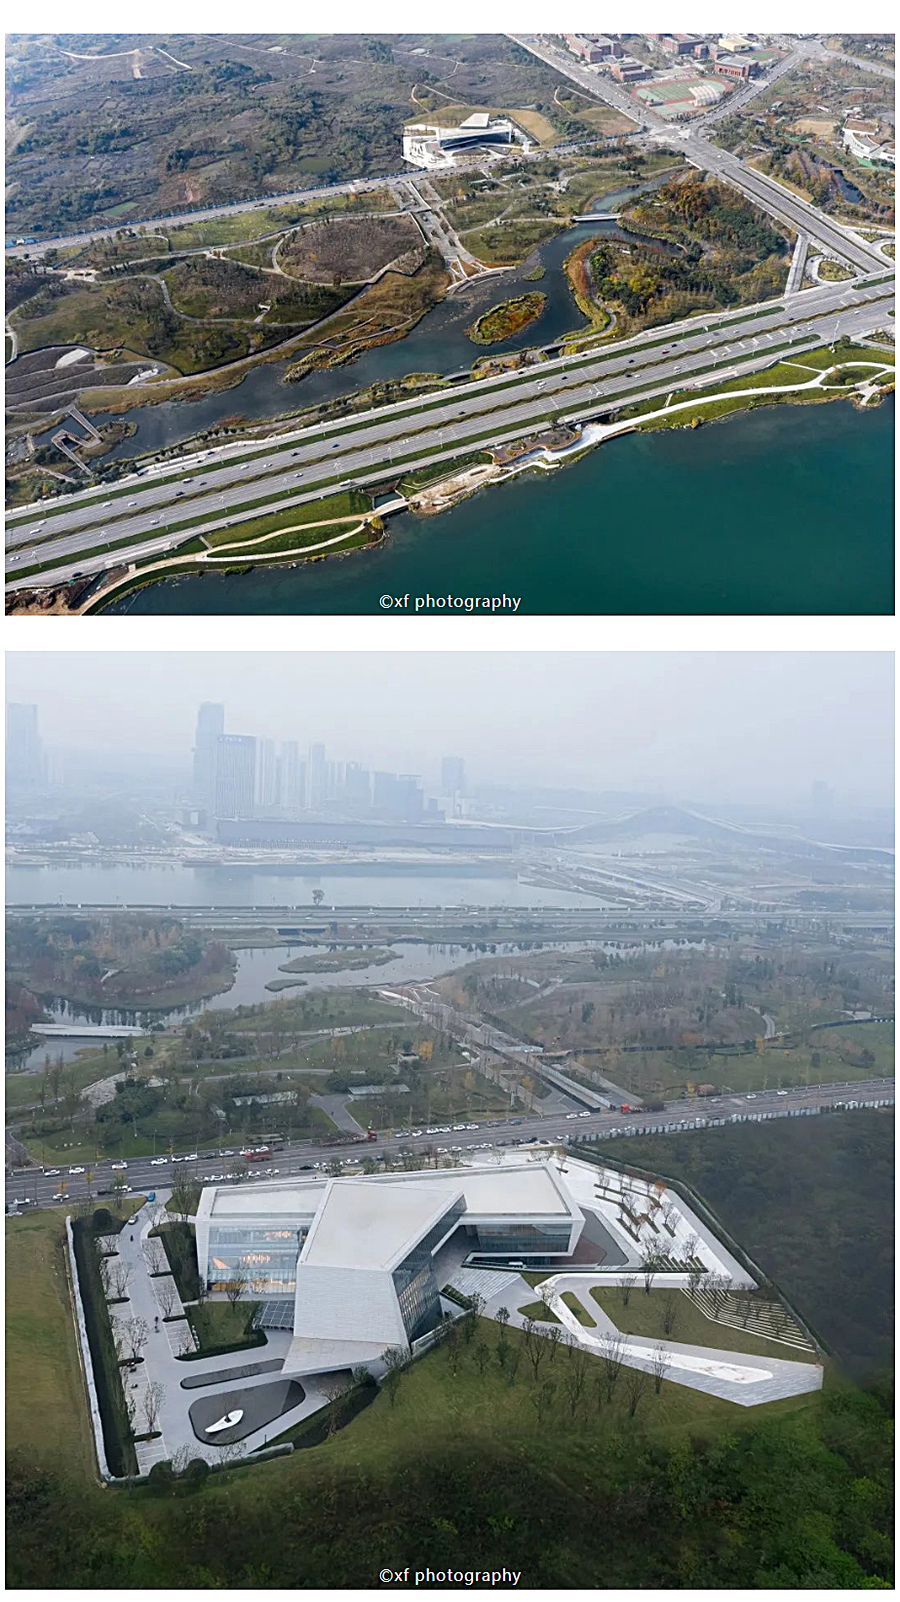 一个建筑代表一座新城-_-成都招商天府新区城市规划展示馆_0002_图层-3.jpg